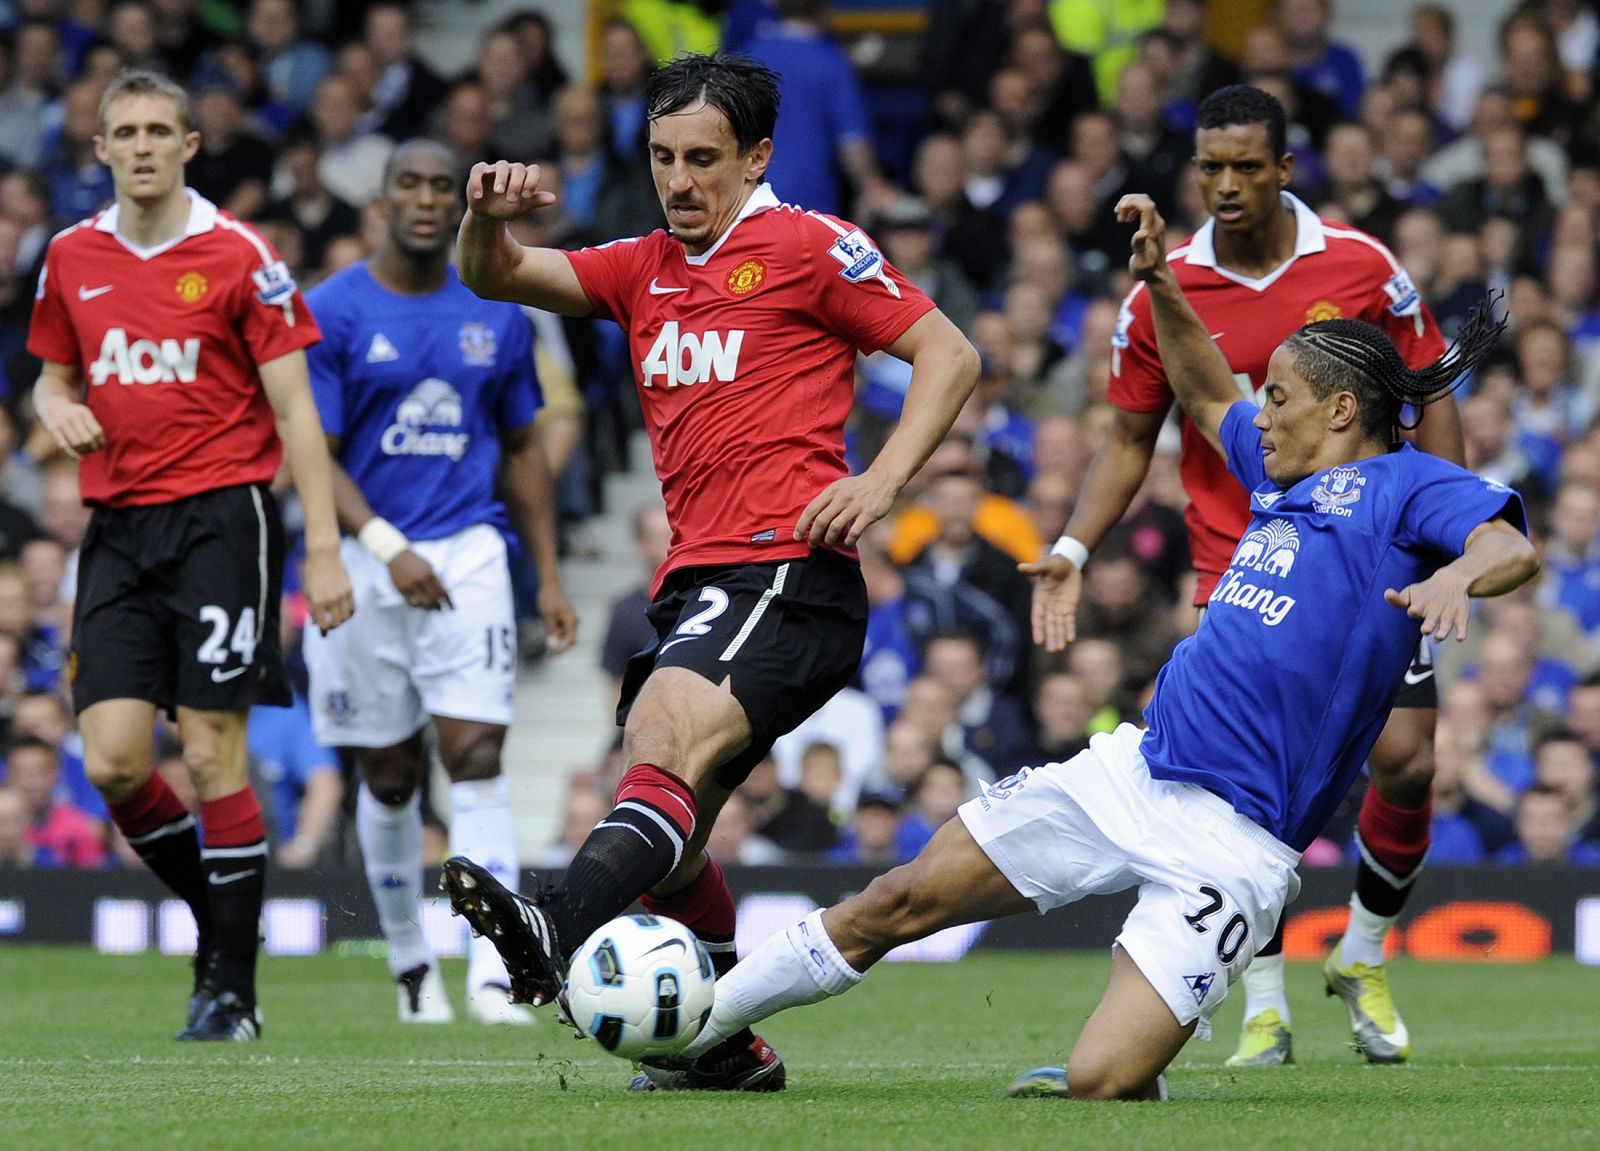 El Everton ha remontado un 1-3 para lograr un meritorio empate con el Manchester United.